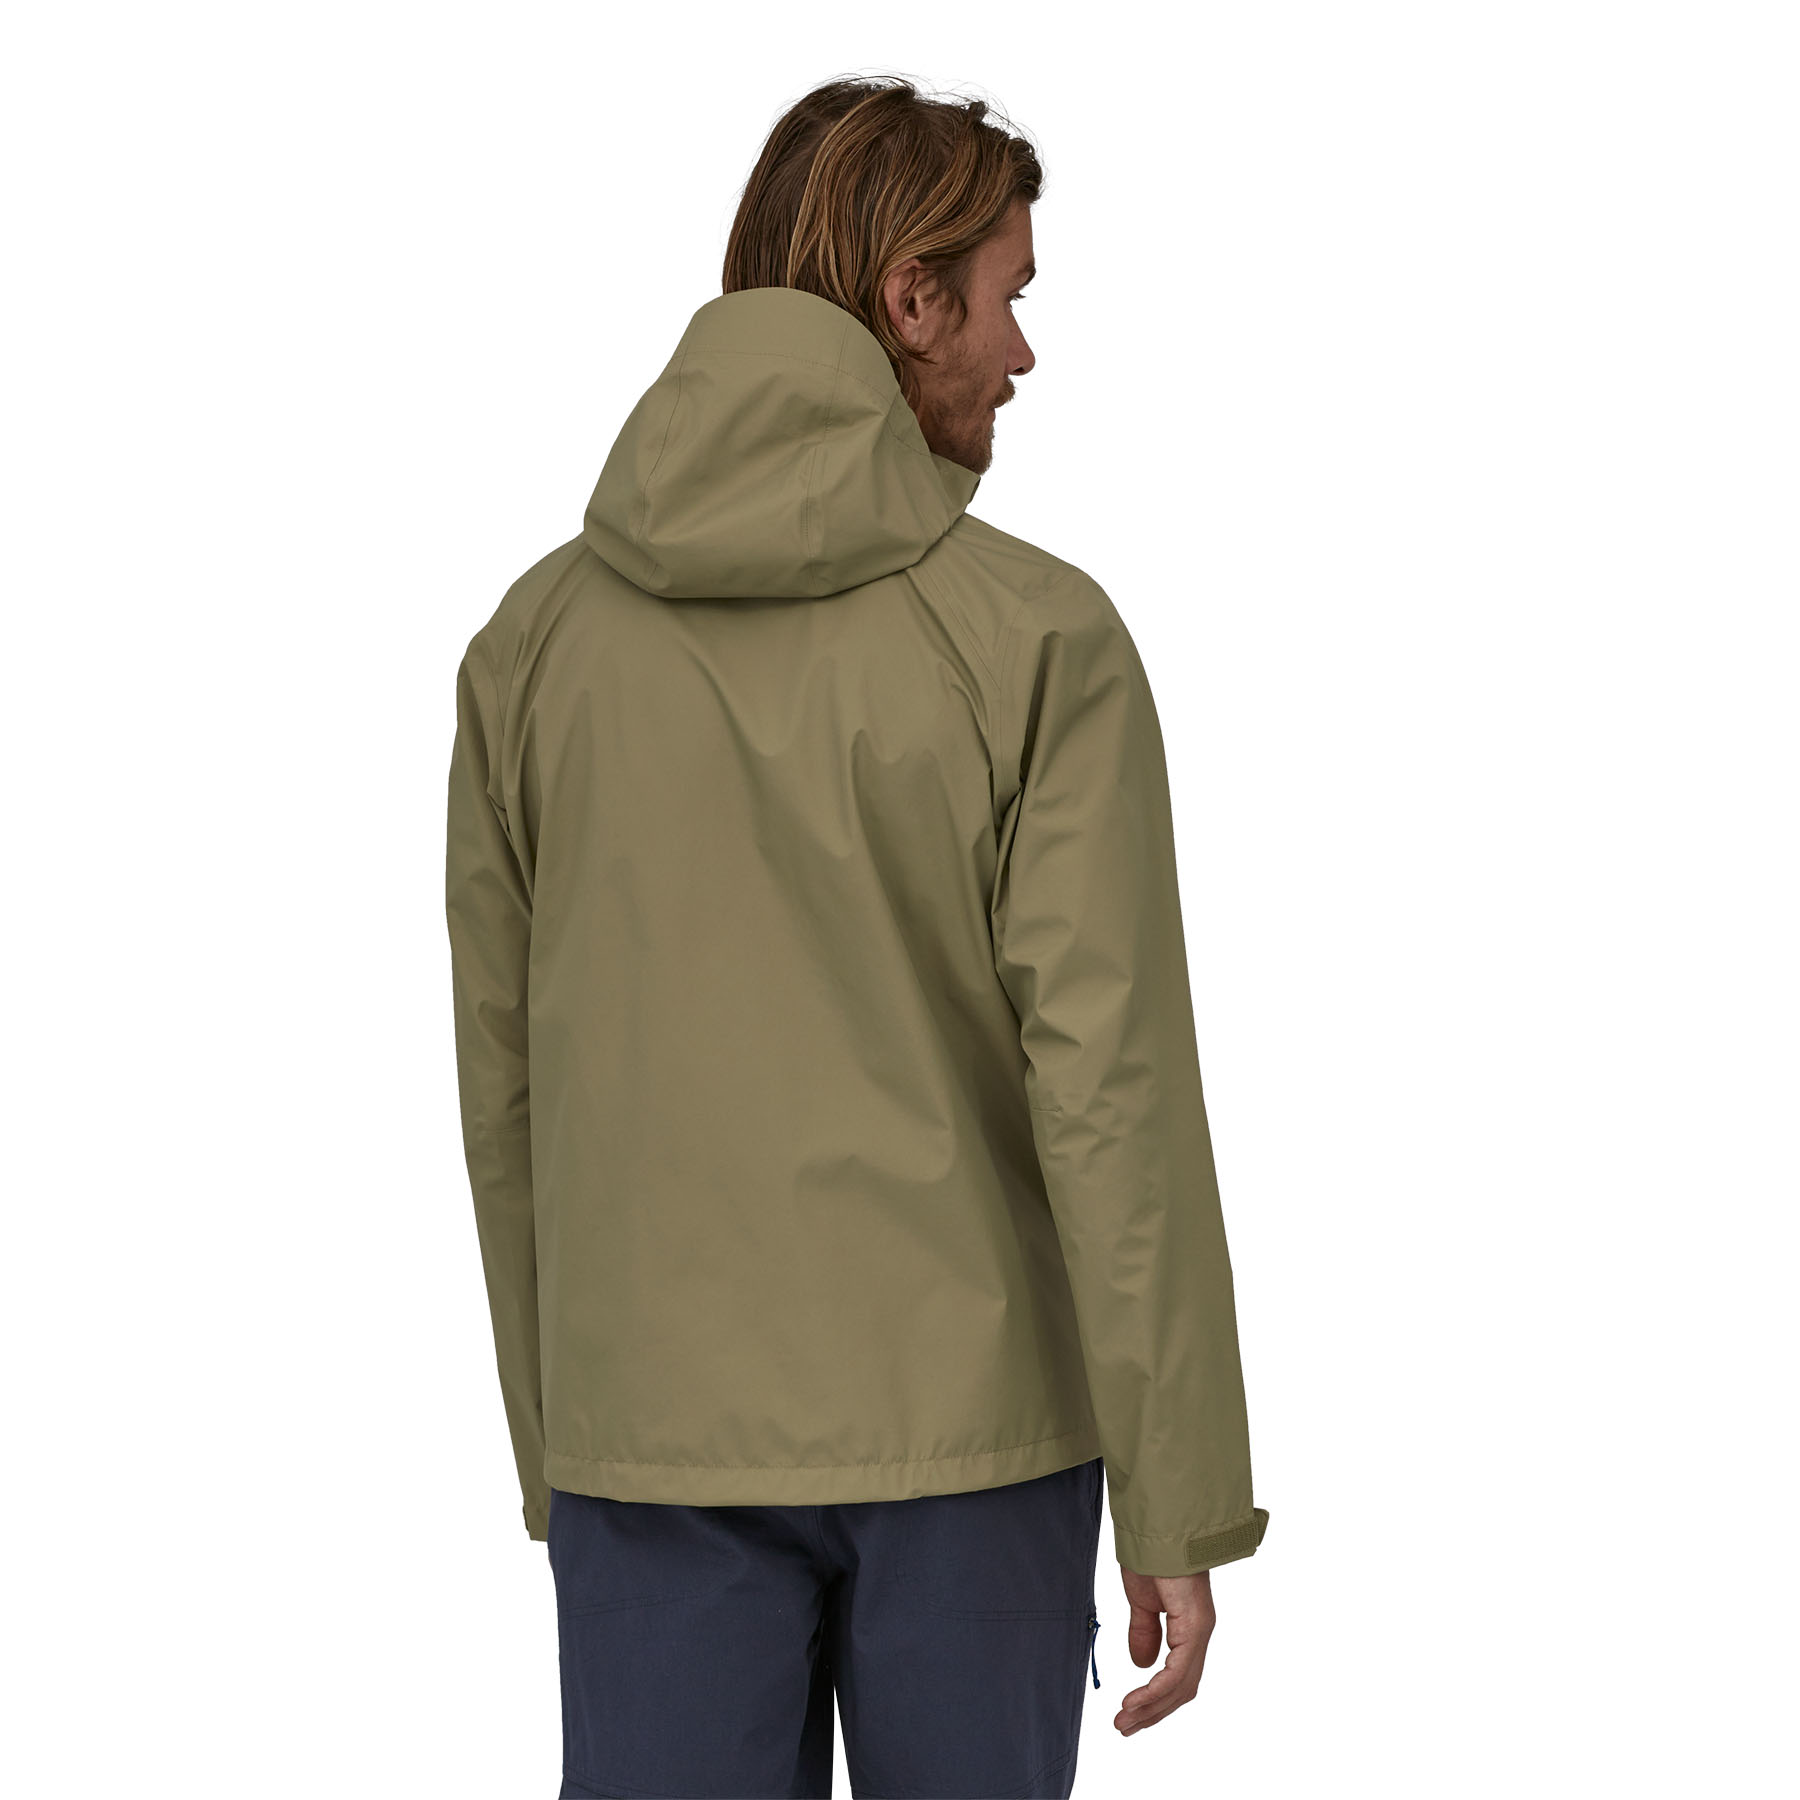 Patagonia Men's Torrentshell 3L Jacket (sage khaki)